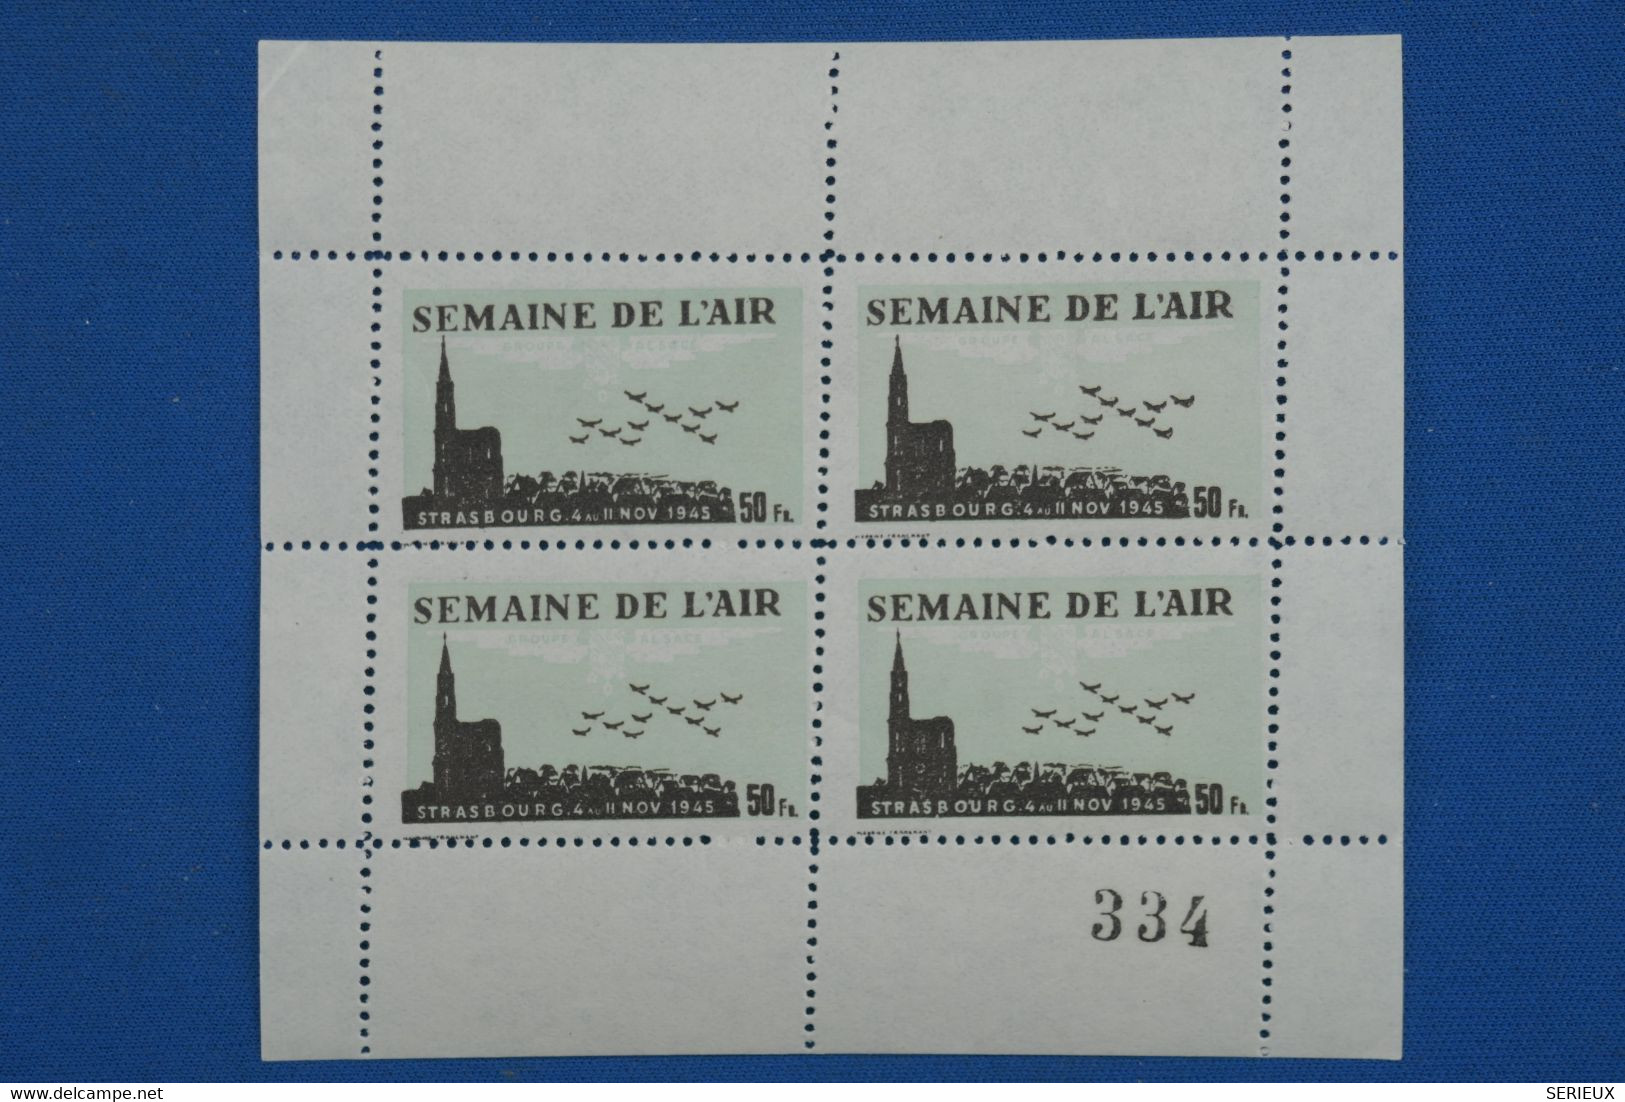 C1 FRANCE BEAU BLOC NEUF  1945 SEMAINE DE L AIR STRASBOURG 50 FR+ NUMEROTé+ +PAS COURANT ++ - Luftfahrt